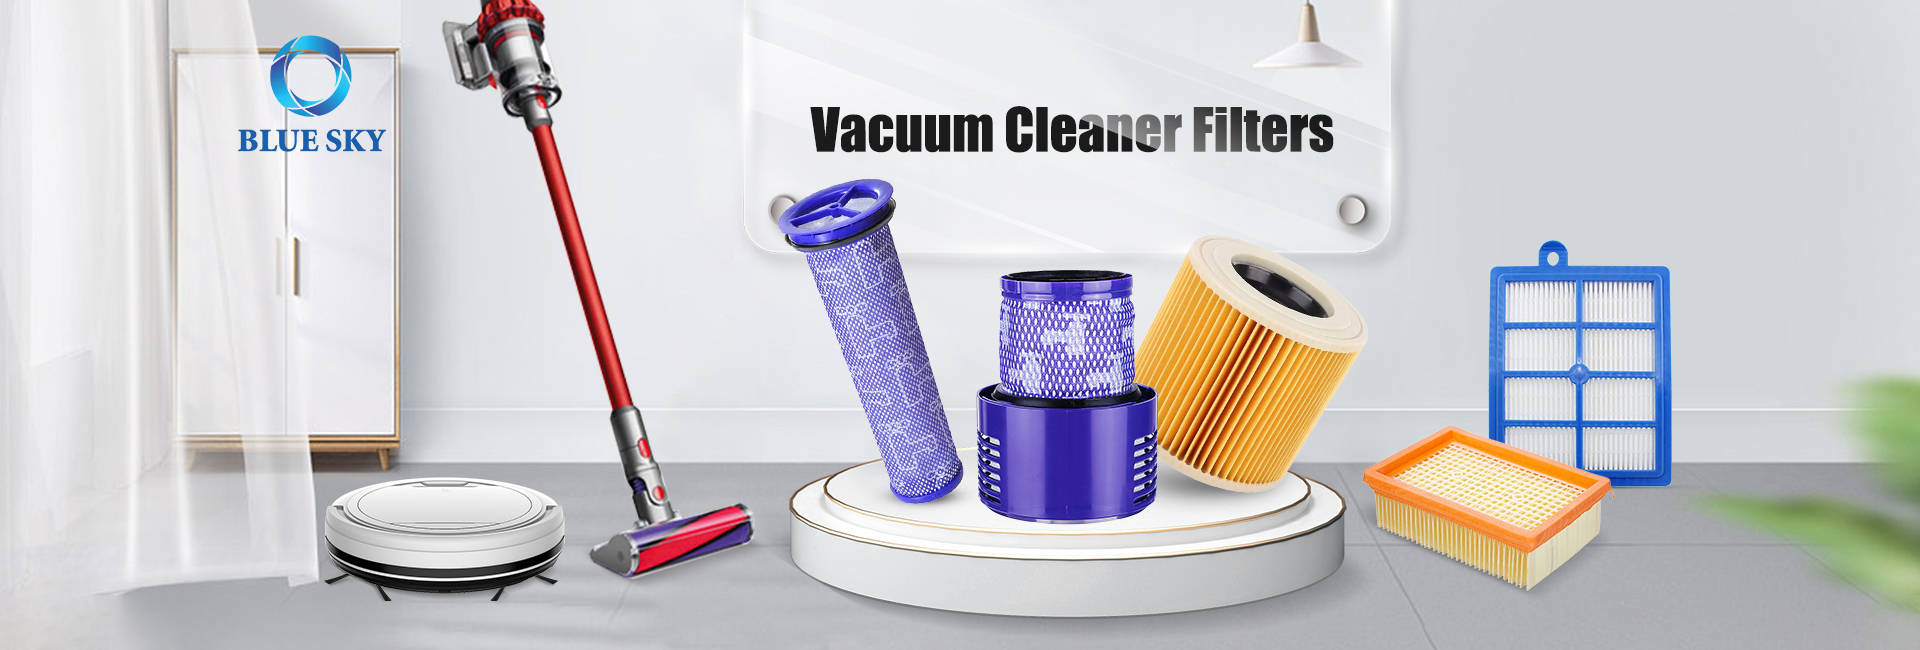 Vacuum Cleaner Filter Parts